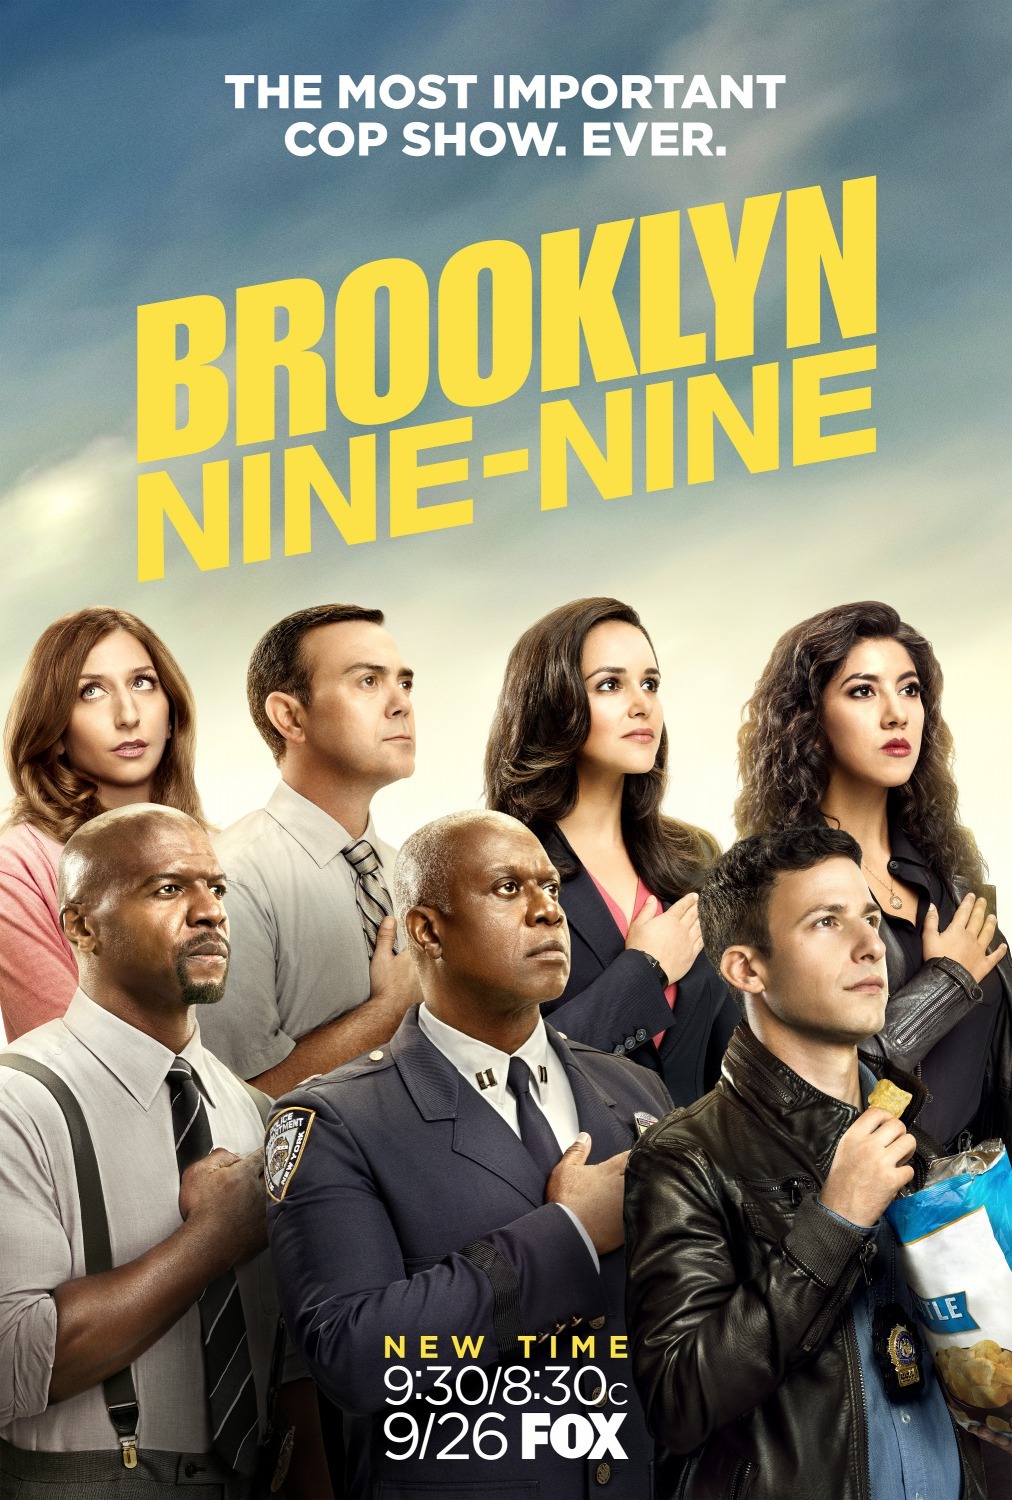 ดูหนังออนไลน์ฟรี Brooklyn Nine-Nine Season 4 EP.9 บรู๊คลินเก้า ปี 4 ตอนที่ 9